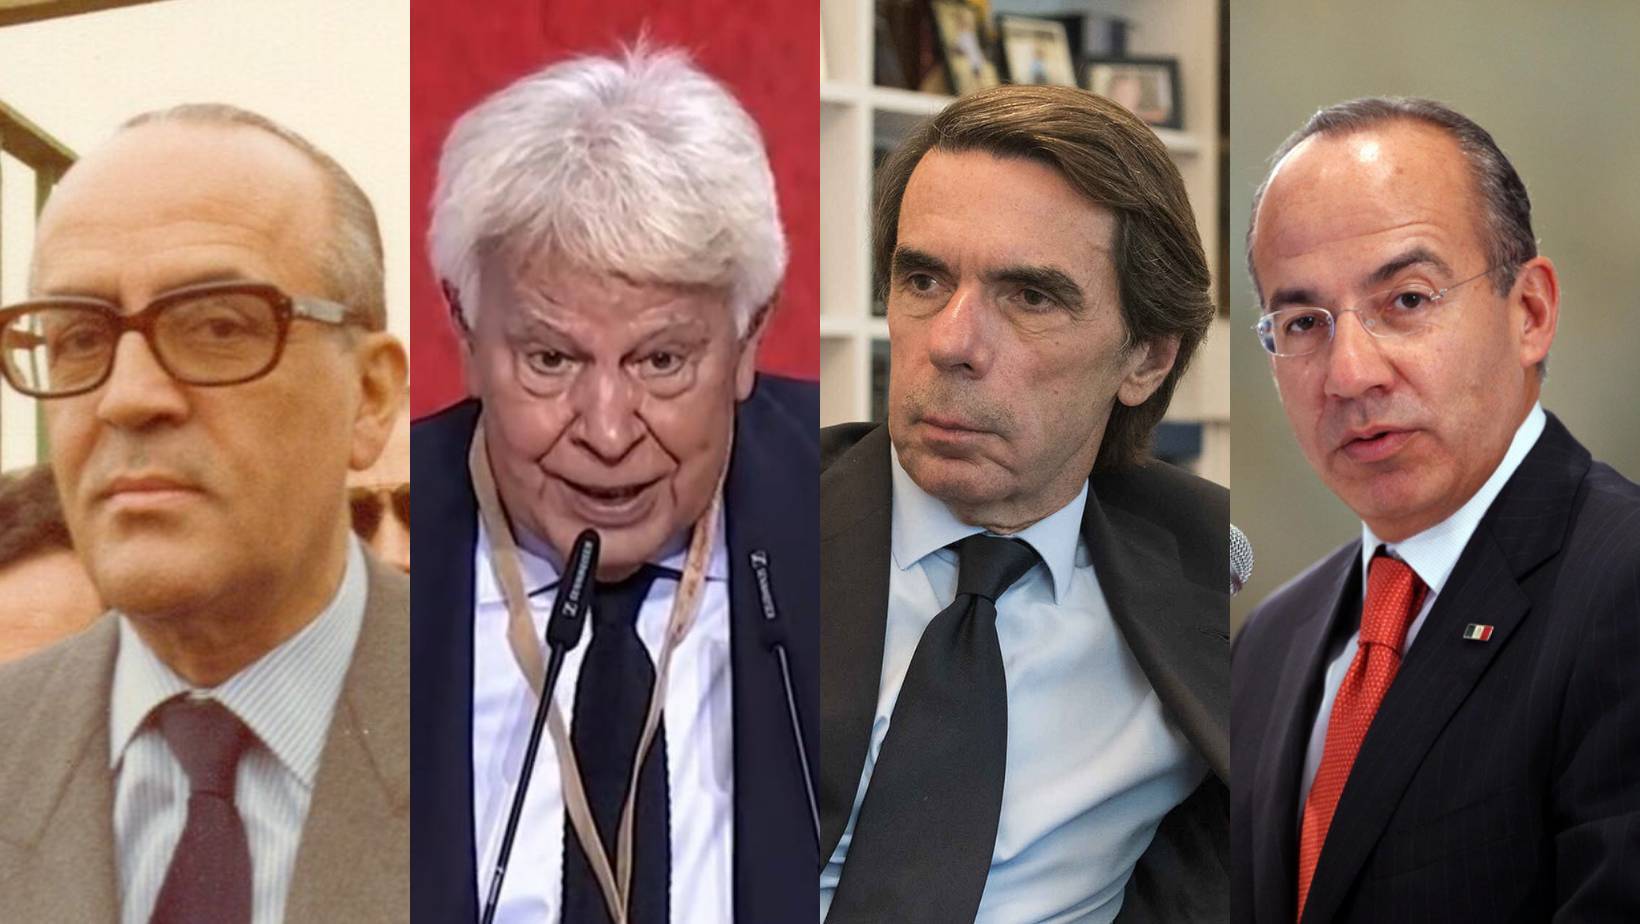 Expresidentes y exfuncionarios contratados por empresas eléctricas españolas